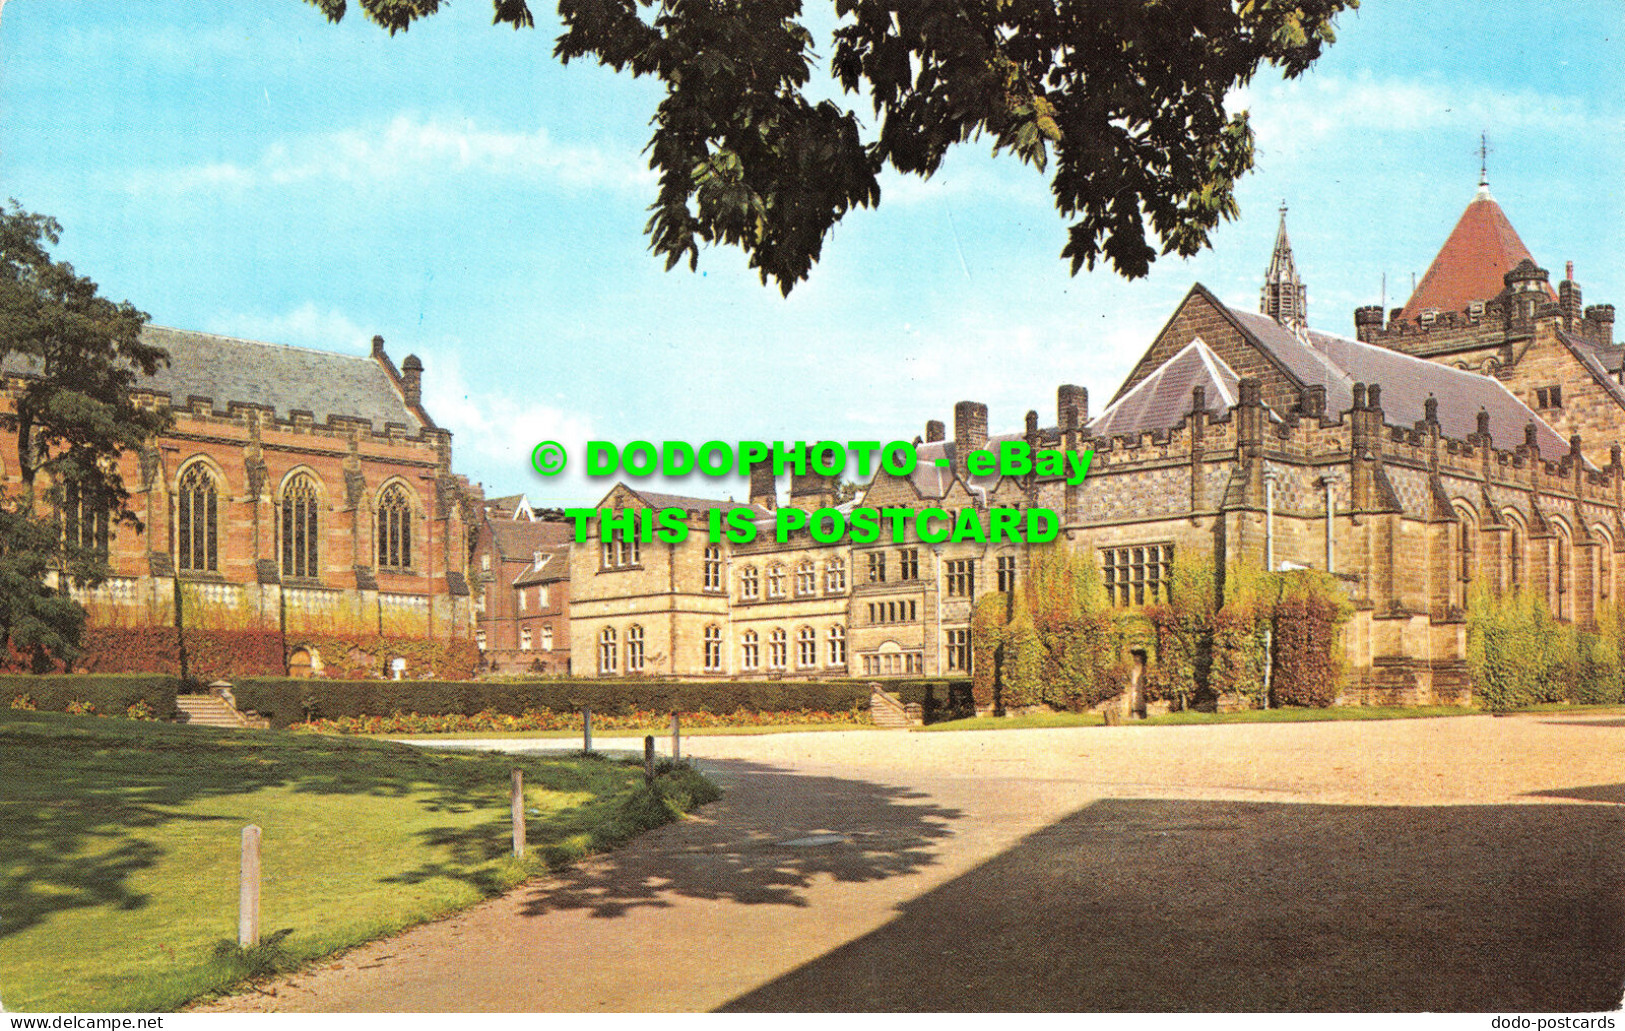 R517735 Tonbridge School. Postcard - Mondo